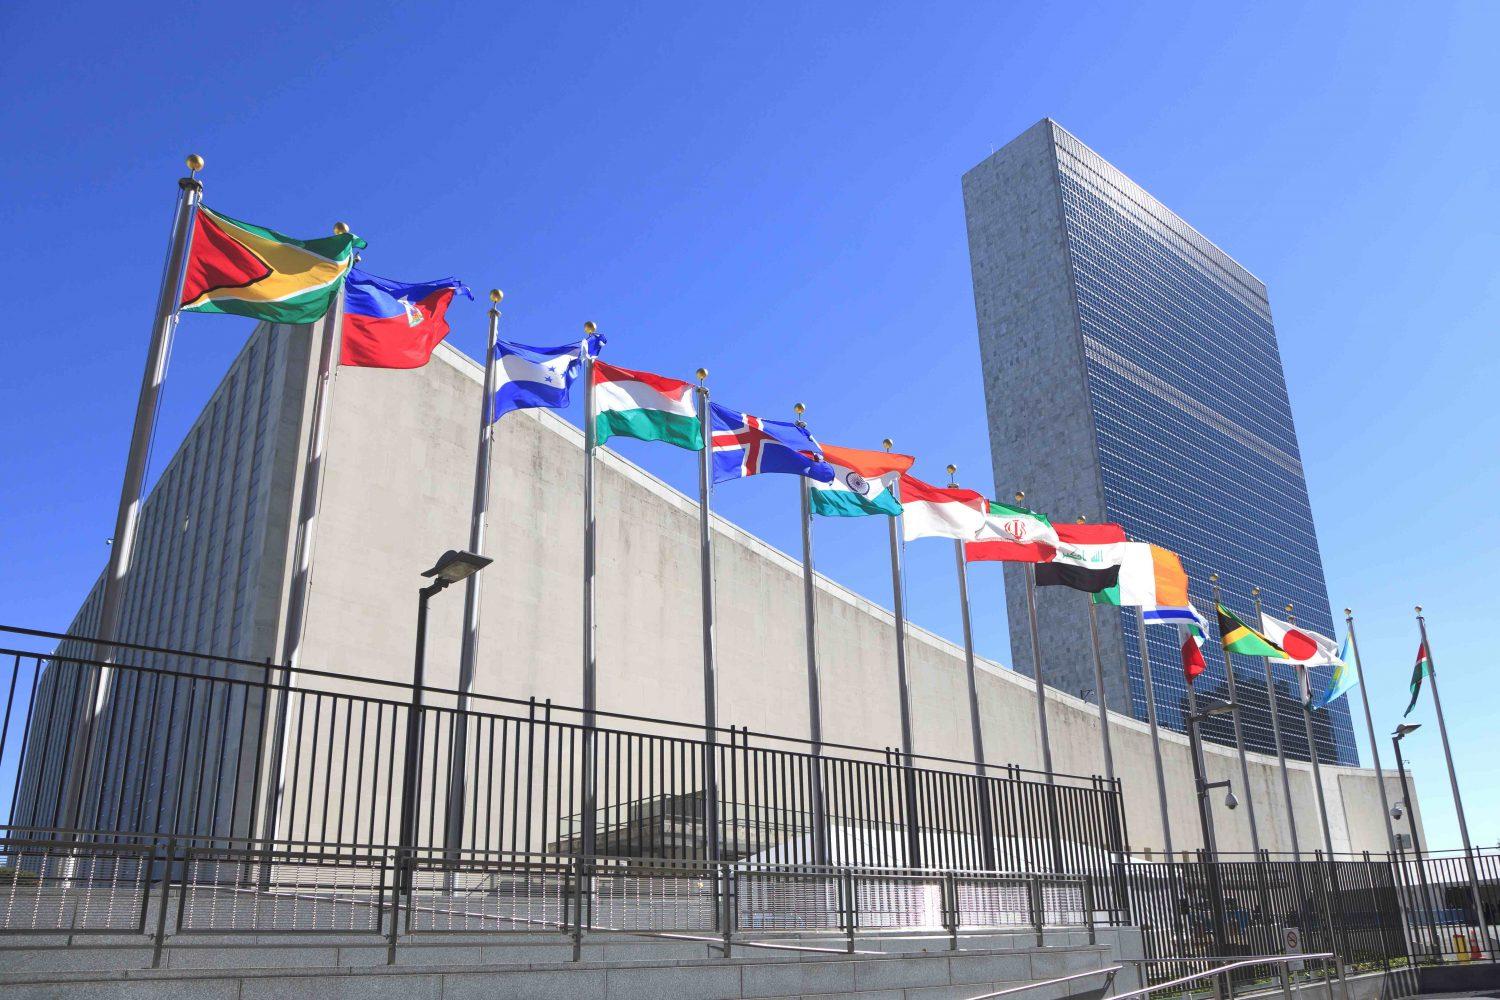 ՄԱԿ-ը ողջունում է Լեռնային Ղարաբաղում լարվածությունը նվազեցնելու ջանքերը